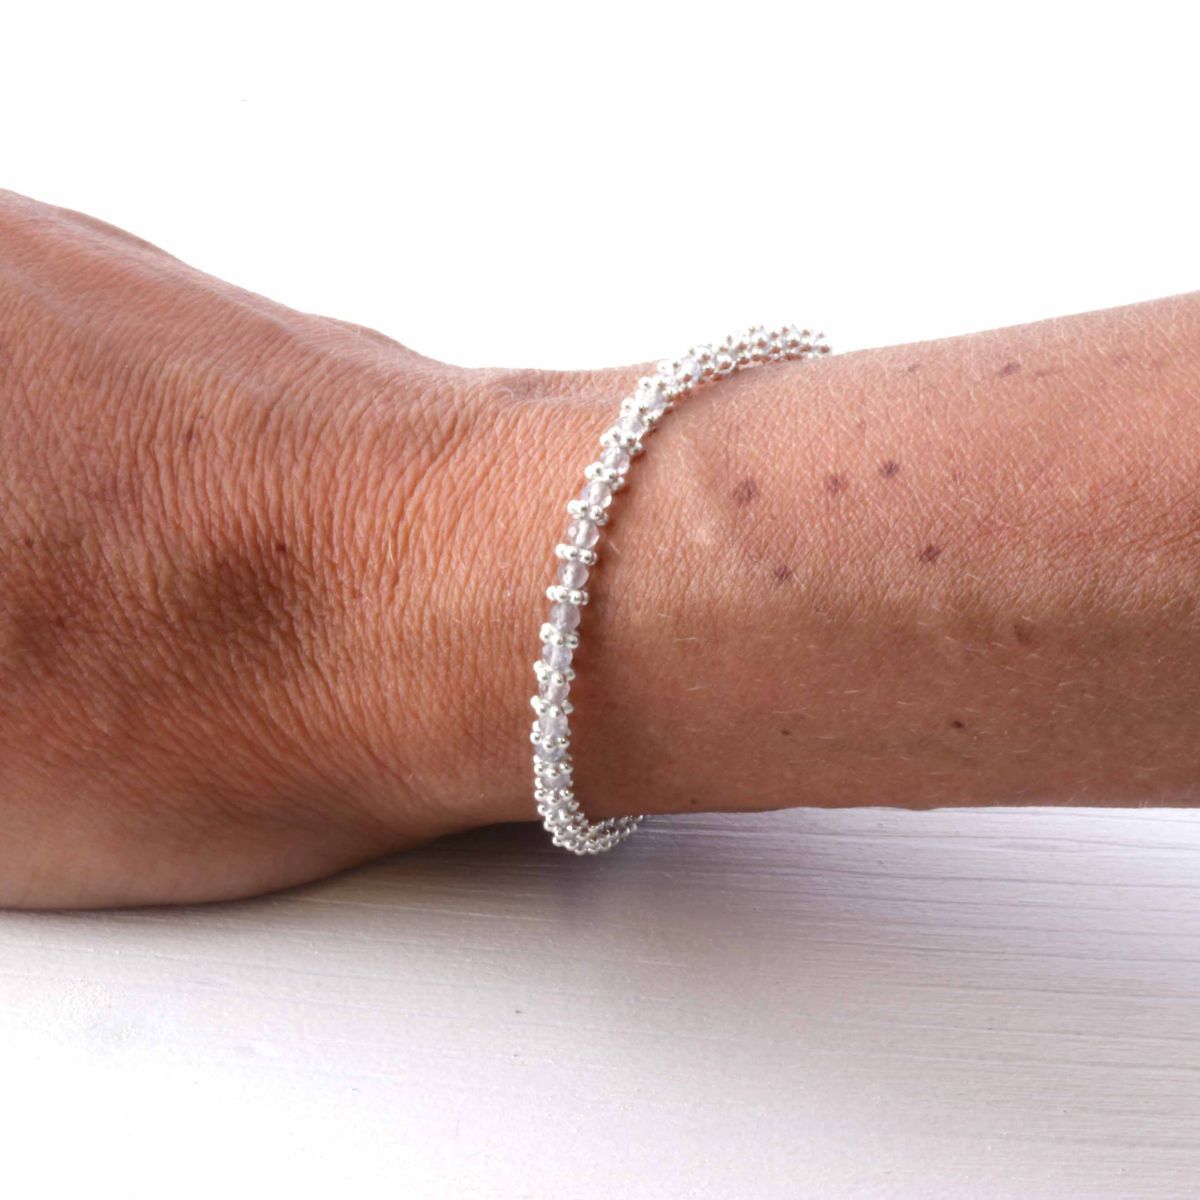 a woman wearing a silver labradorite bracelet on her wrist